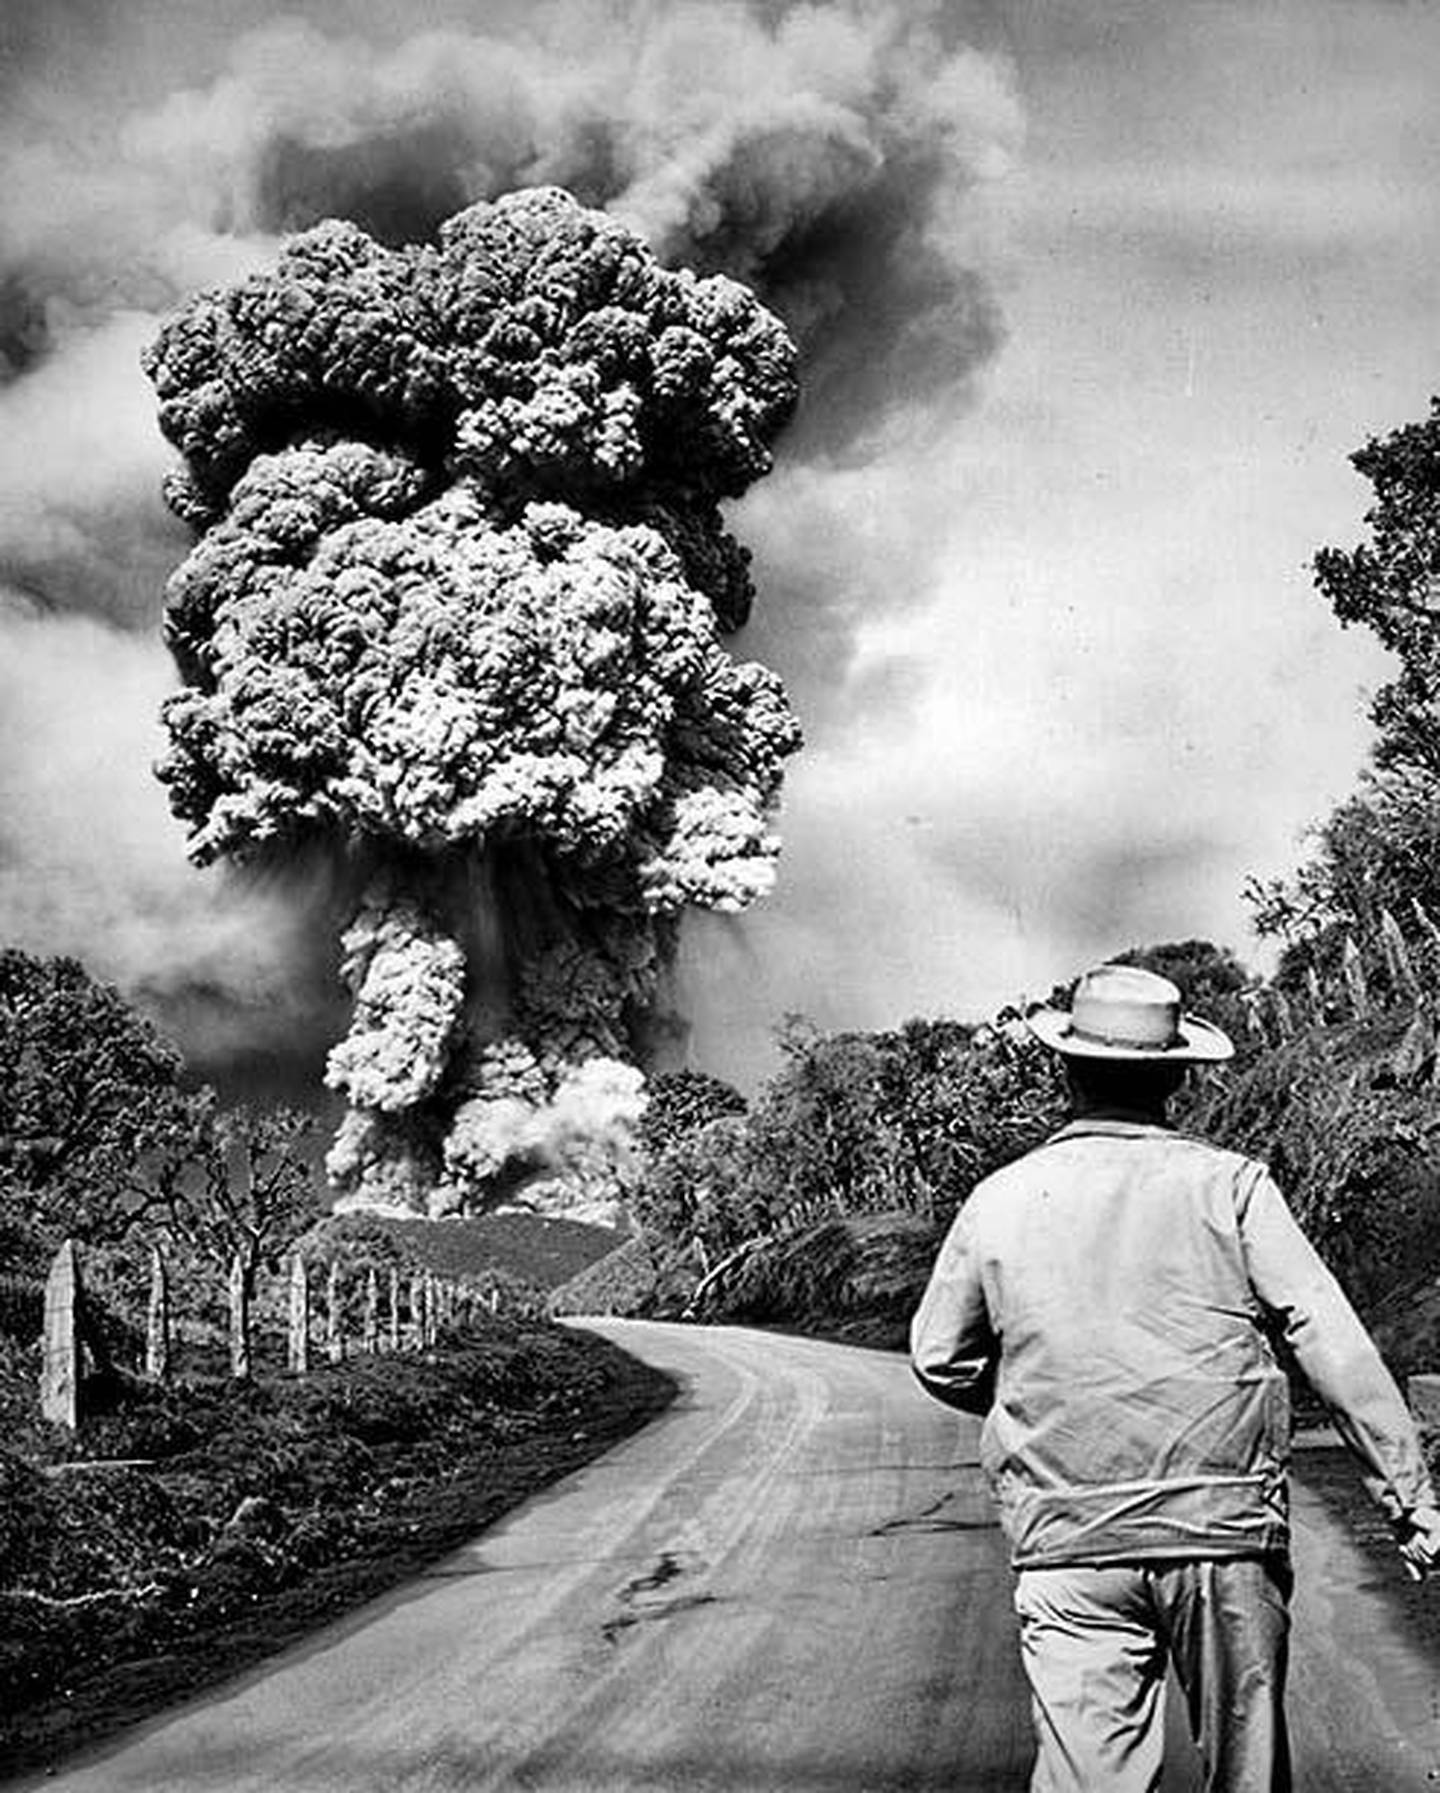 El 09 de agosto de 1962 un fuerte retumbo y una gran columna de vapor marcaron el inicio de lo que sería un nuevo ciclo eruptivo en el cráter principal del volcán Irazú, precisamente, siete meses después, pasada la 1:00 pm del 13 de marzo de 1963, una enorme nube de ceniza que se apreciaba desde distintos puntos del Valle Central anunciaba que el macizo del Irazú había entrado en erupción, periodo que se extendería hasta 1965.